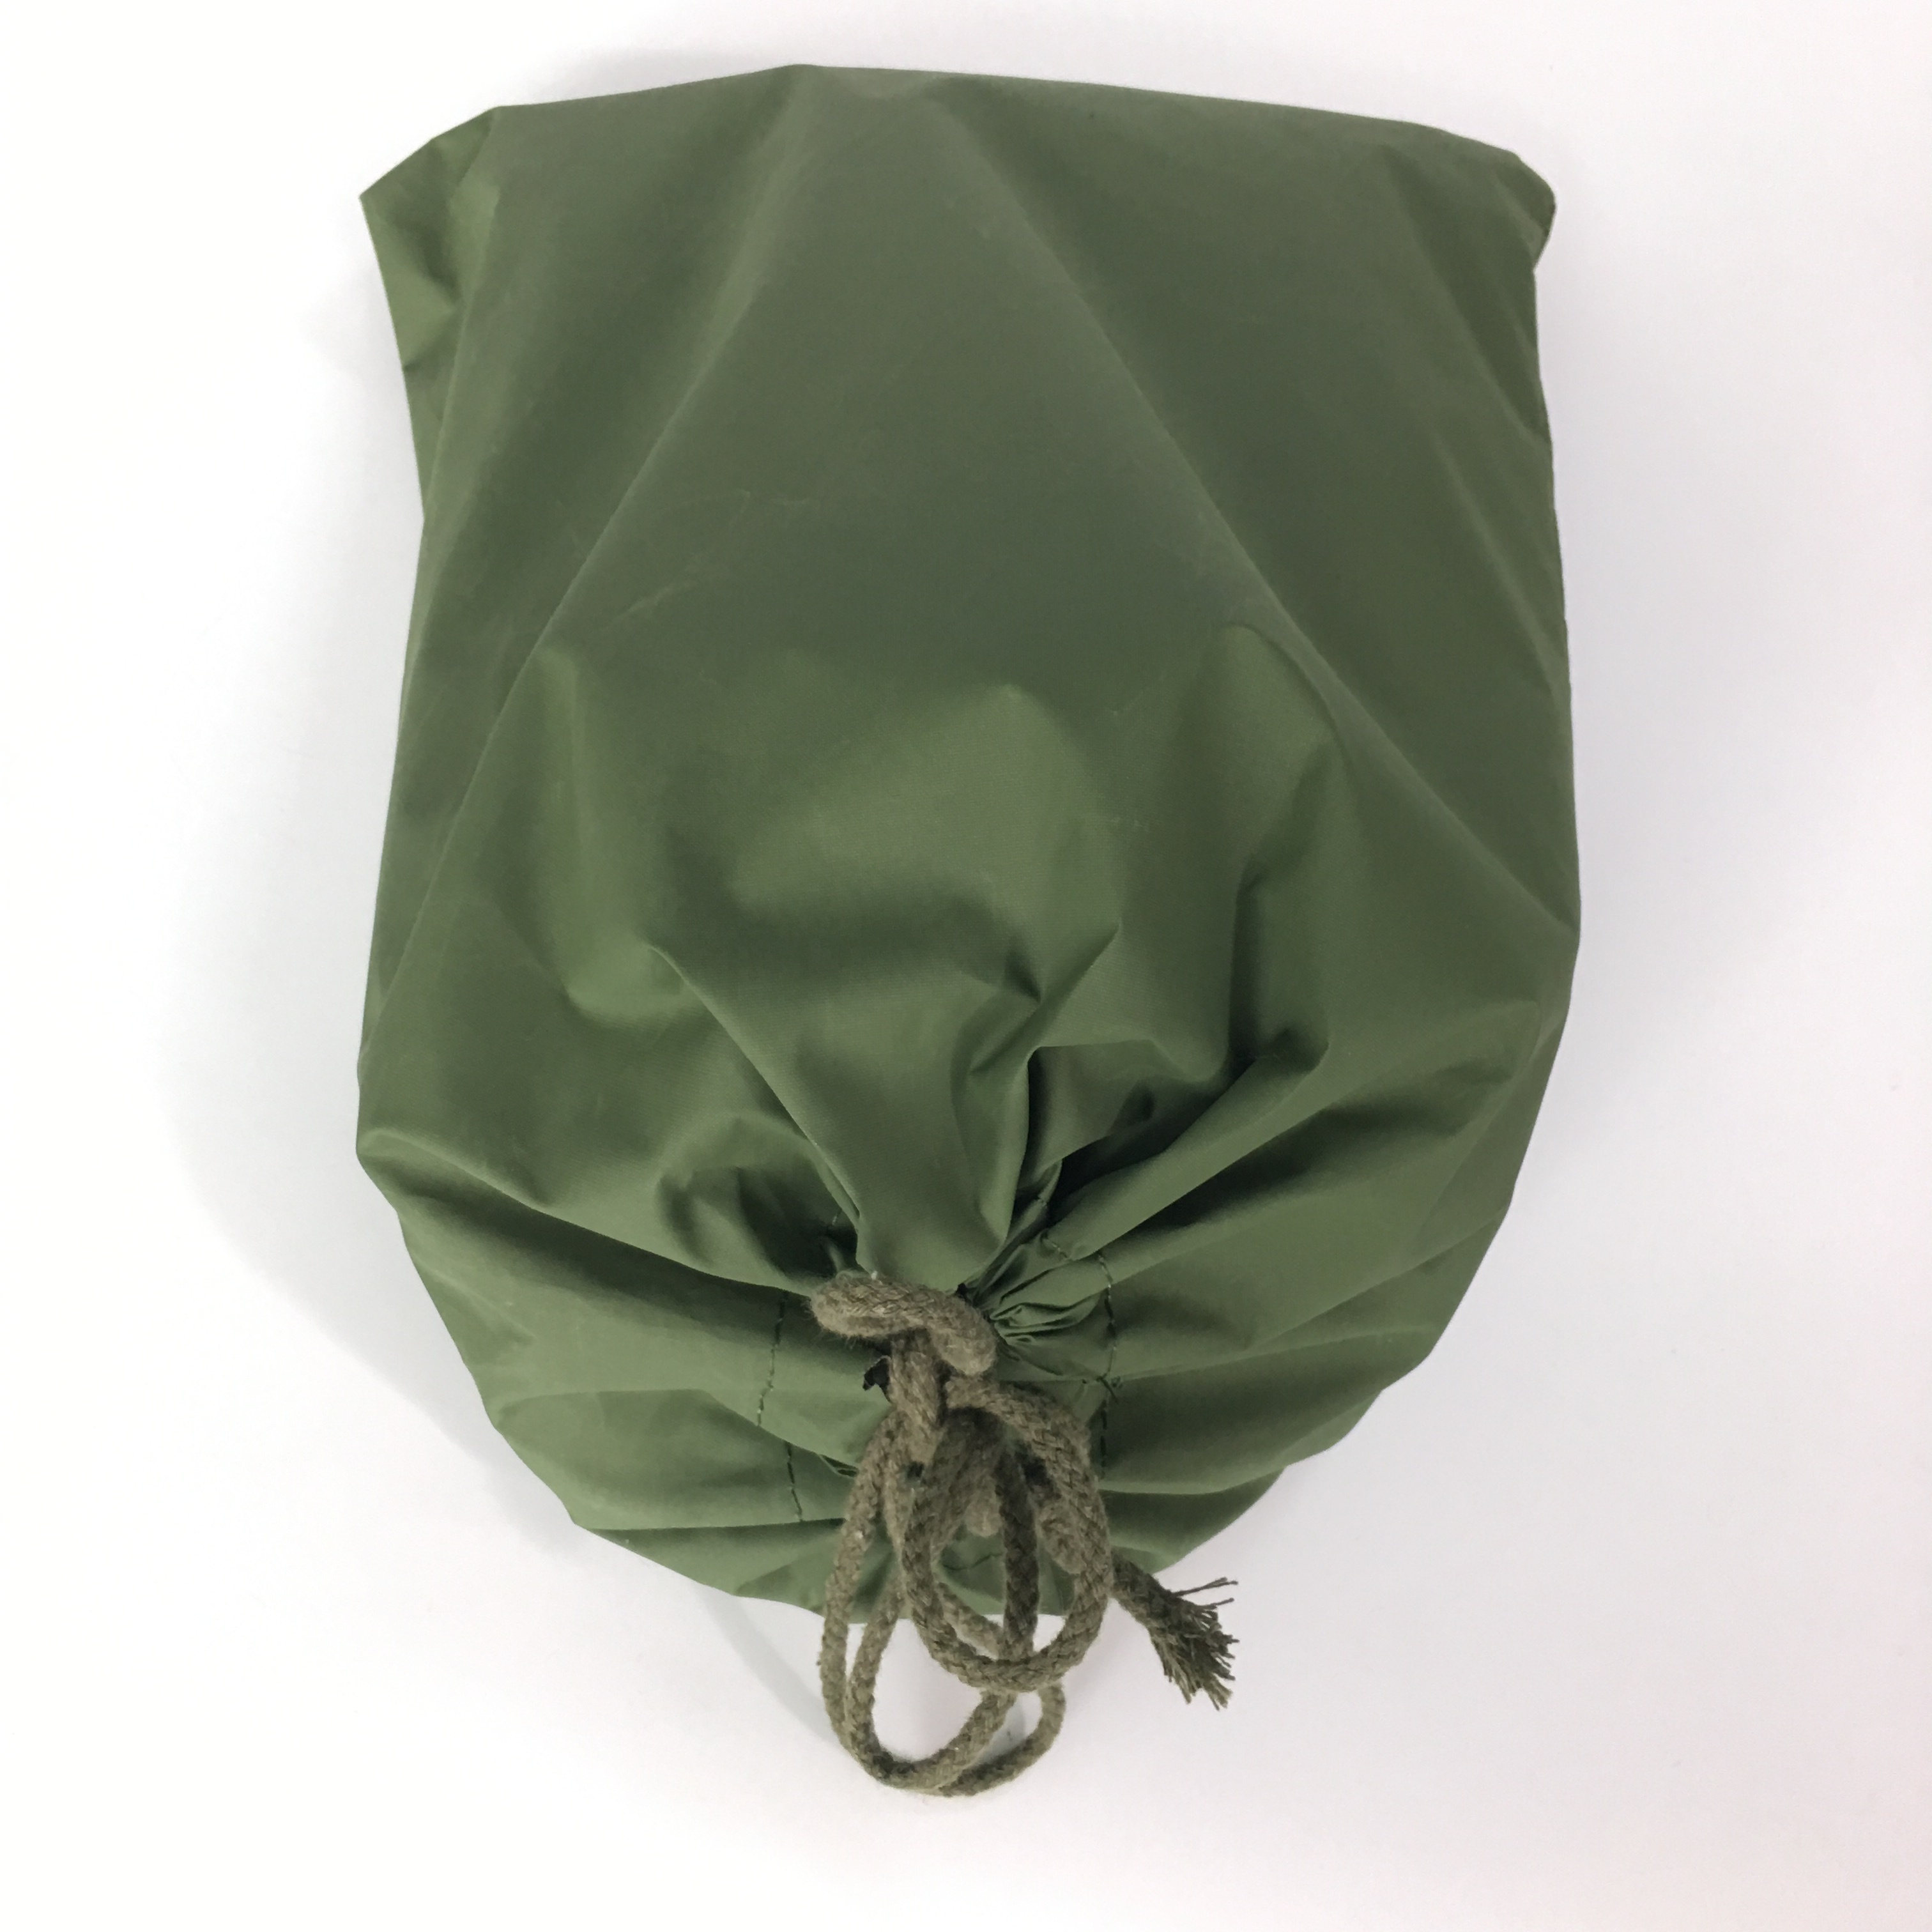 Filet de camouflage vert de filet de camouflage de bois de polyester militaire de gros pour la peau de chasse de camping